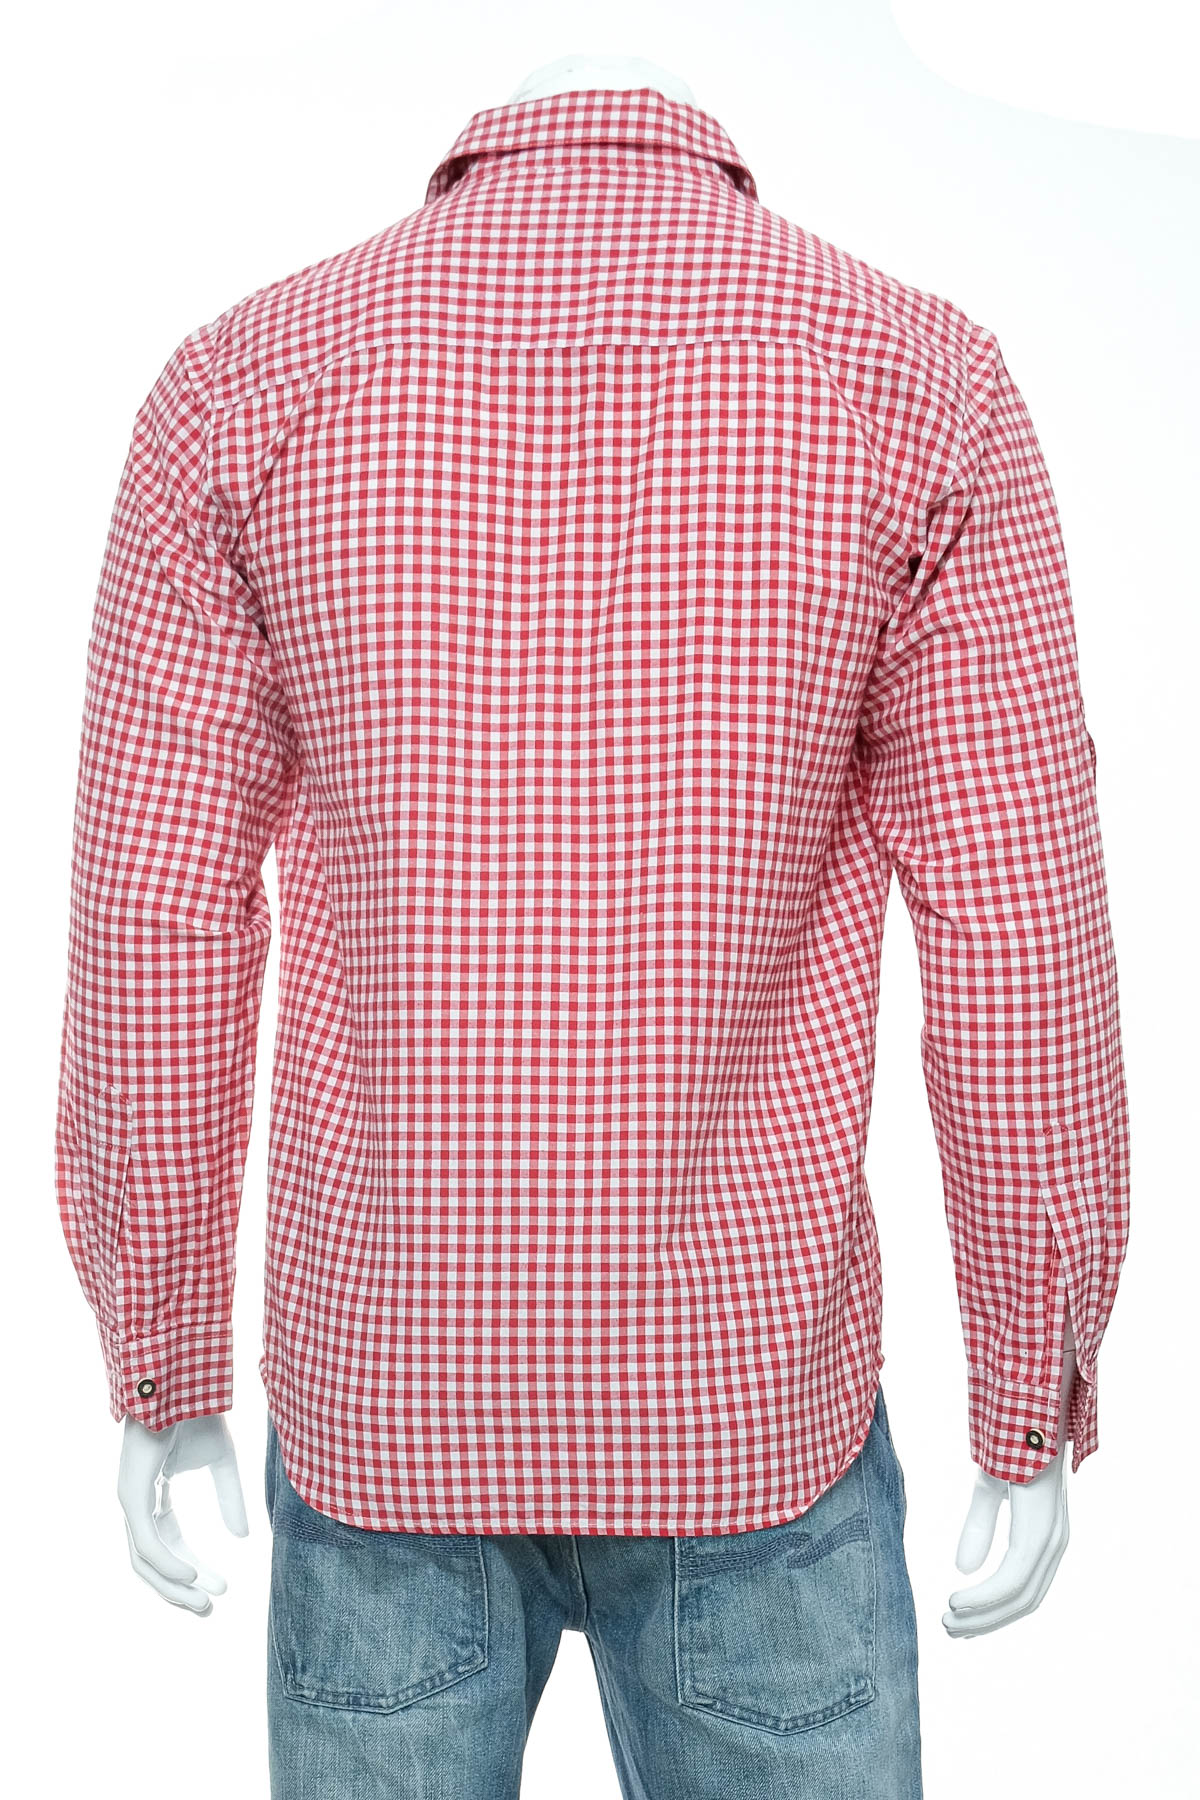 Men's shirt - Alphorn - 1